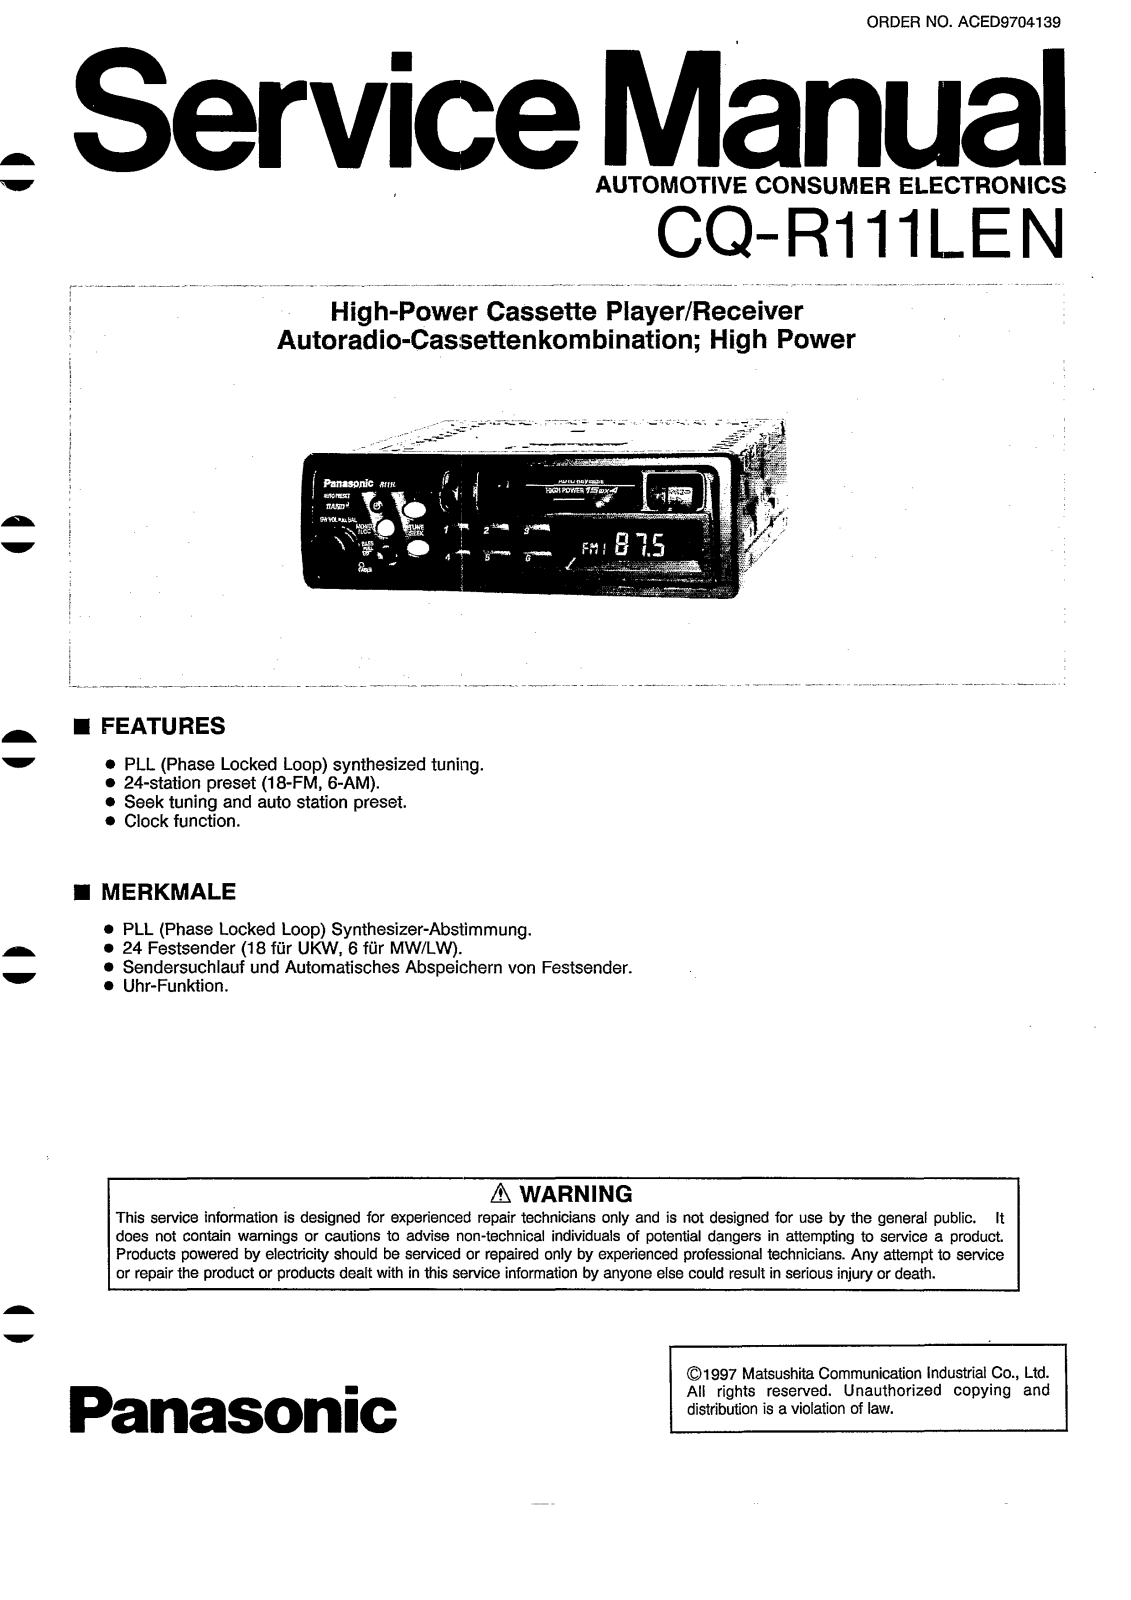 Panasonic CQR-111-LEN Service manual